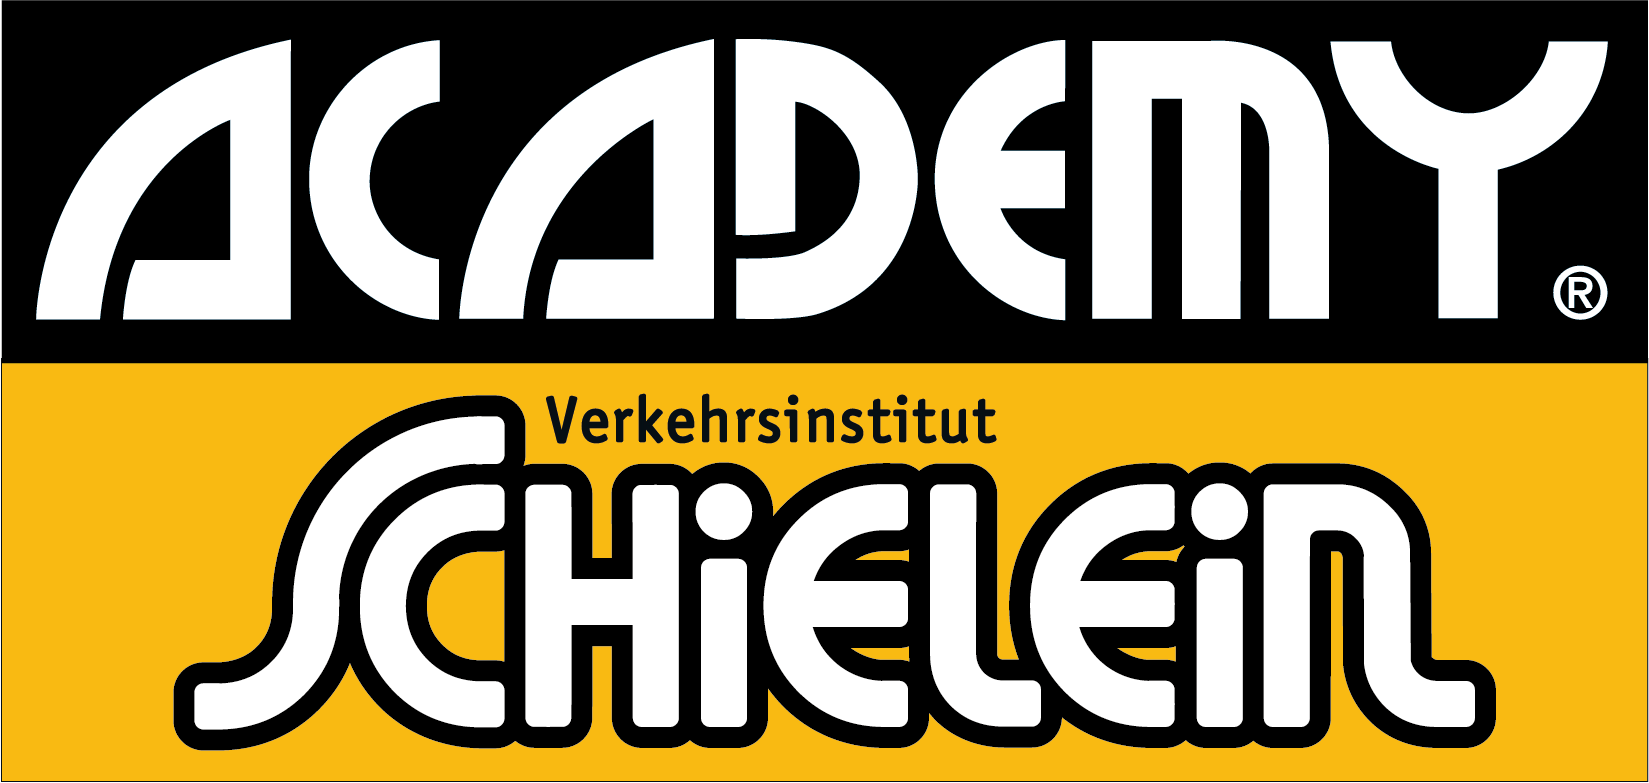 ACADEMY Verkehrsinstitut Schielein